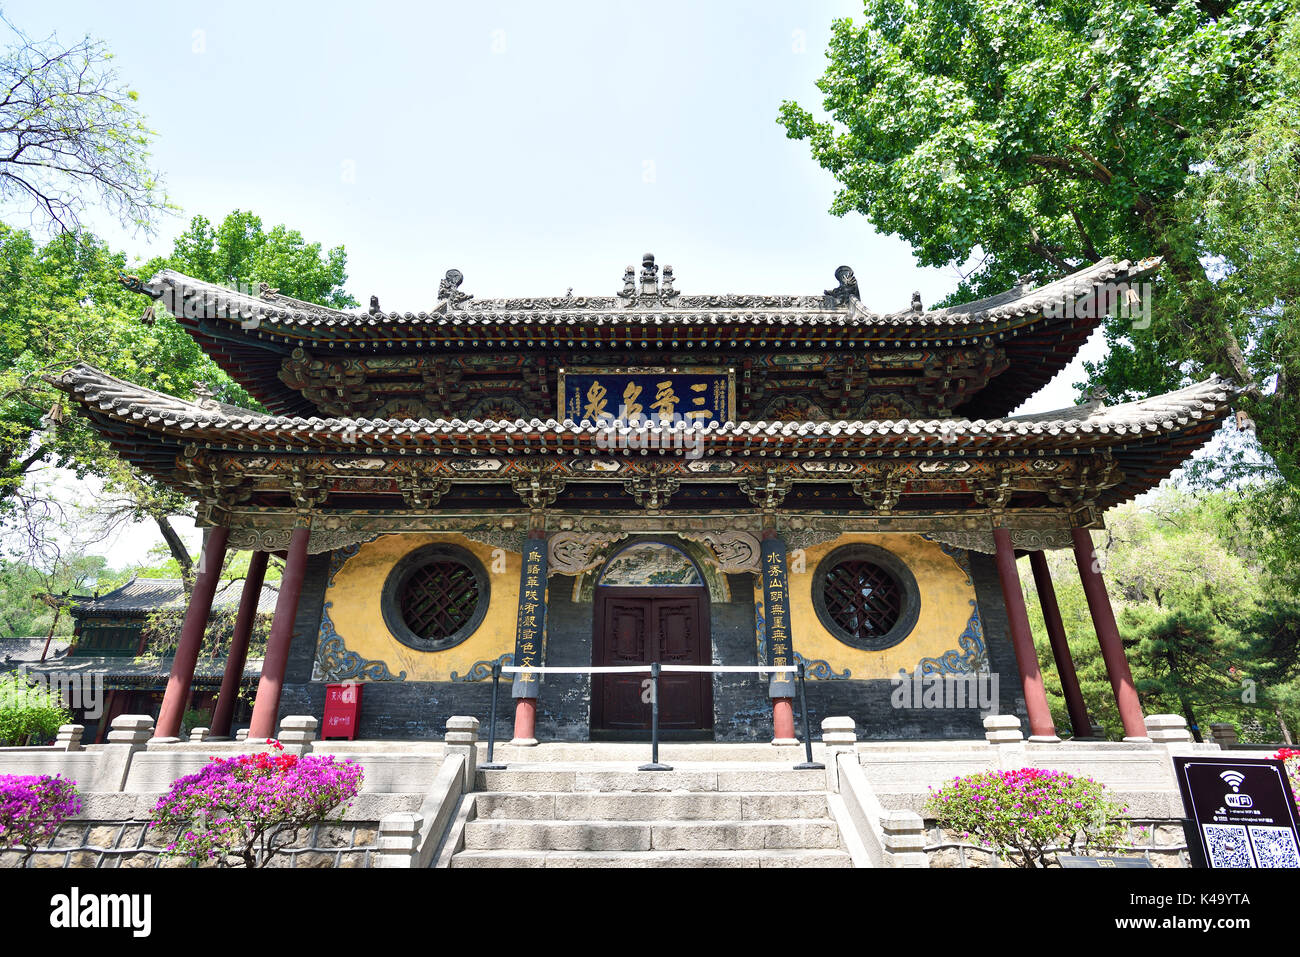 Taiyuan, China - Apr 30,2016: Klassische Chinesische ancientry Gebäude - Der Spiegel Terrasse von jinci Museum in Taiyuan, Provinz Shanxi. Stockfoto